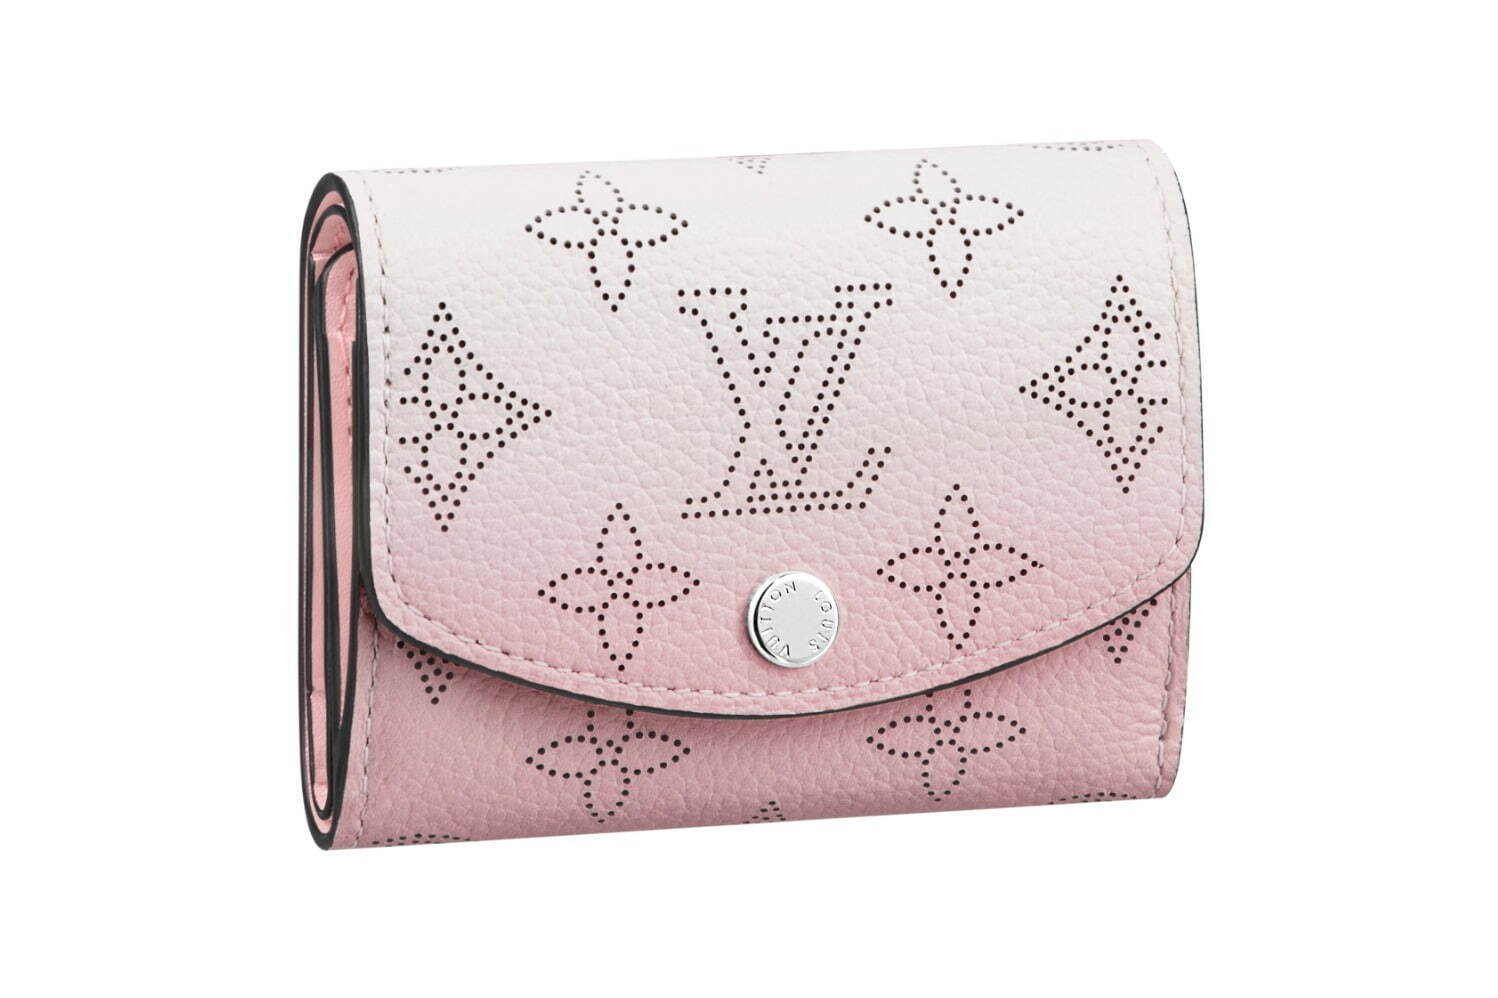 写真1 4 ルイ ヴィトン グラデーション カラーのミニ財布 パステルピンク 涼やかライトブルー ファッションプレス